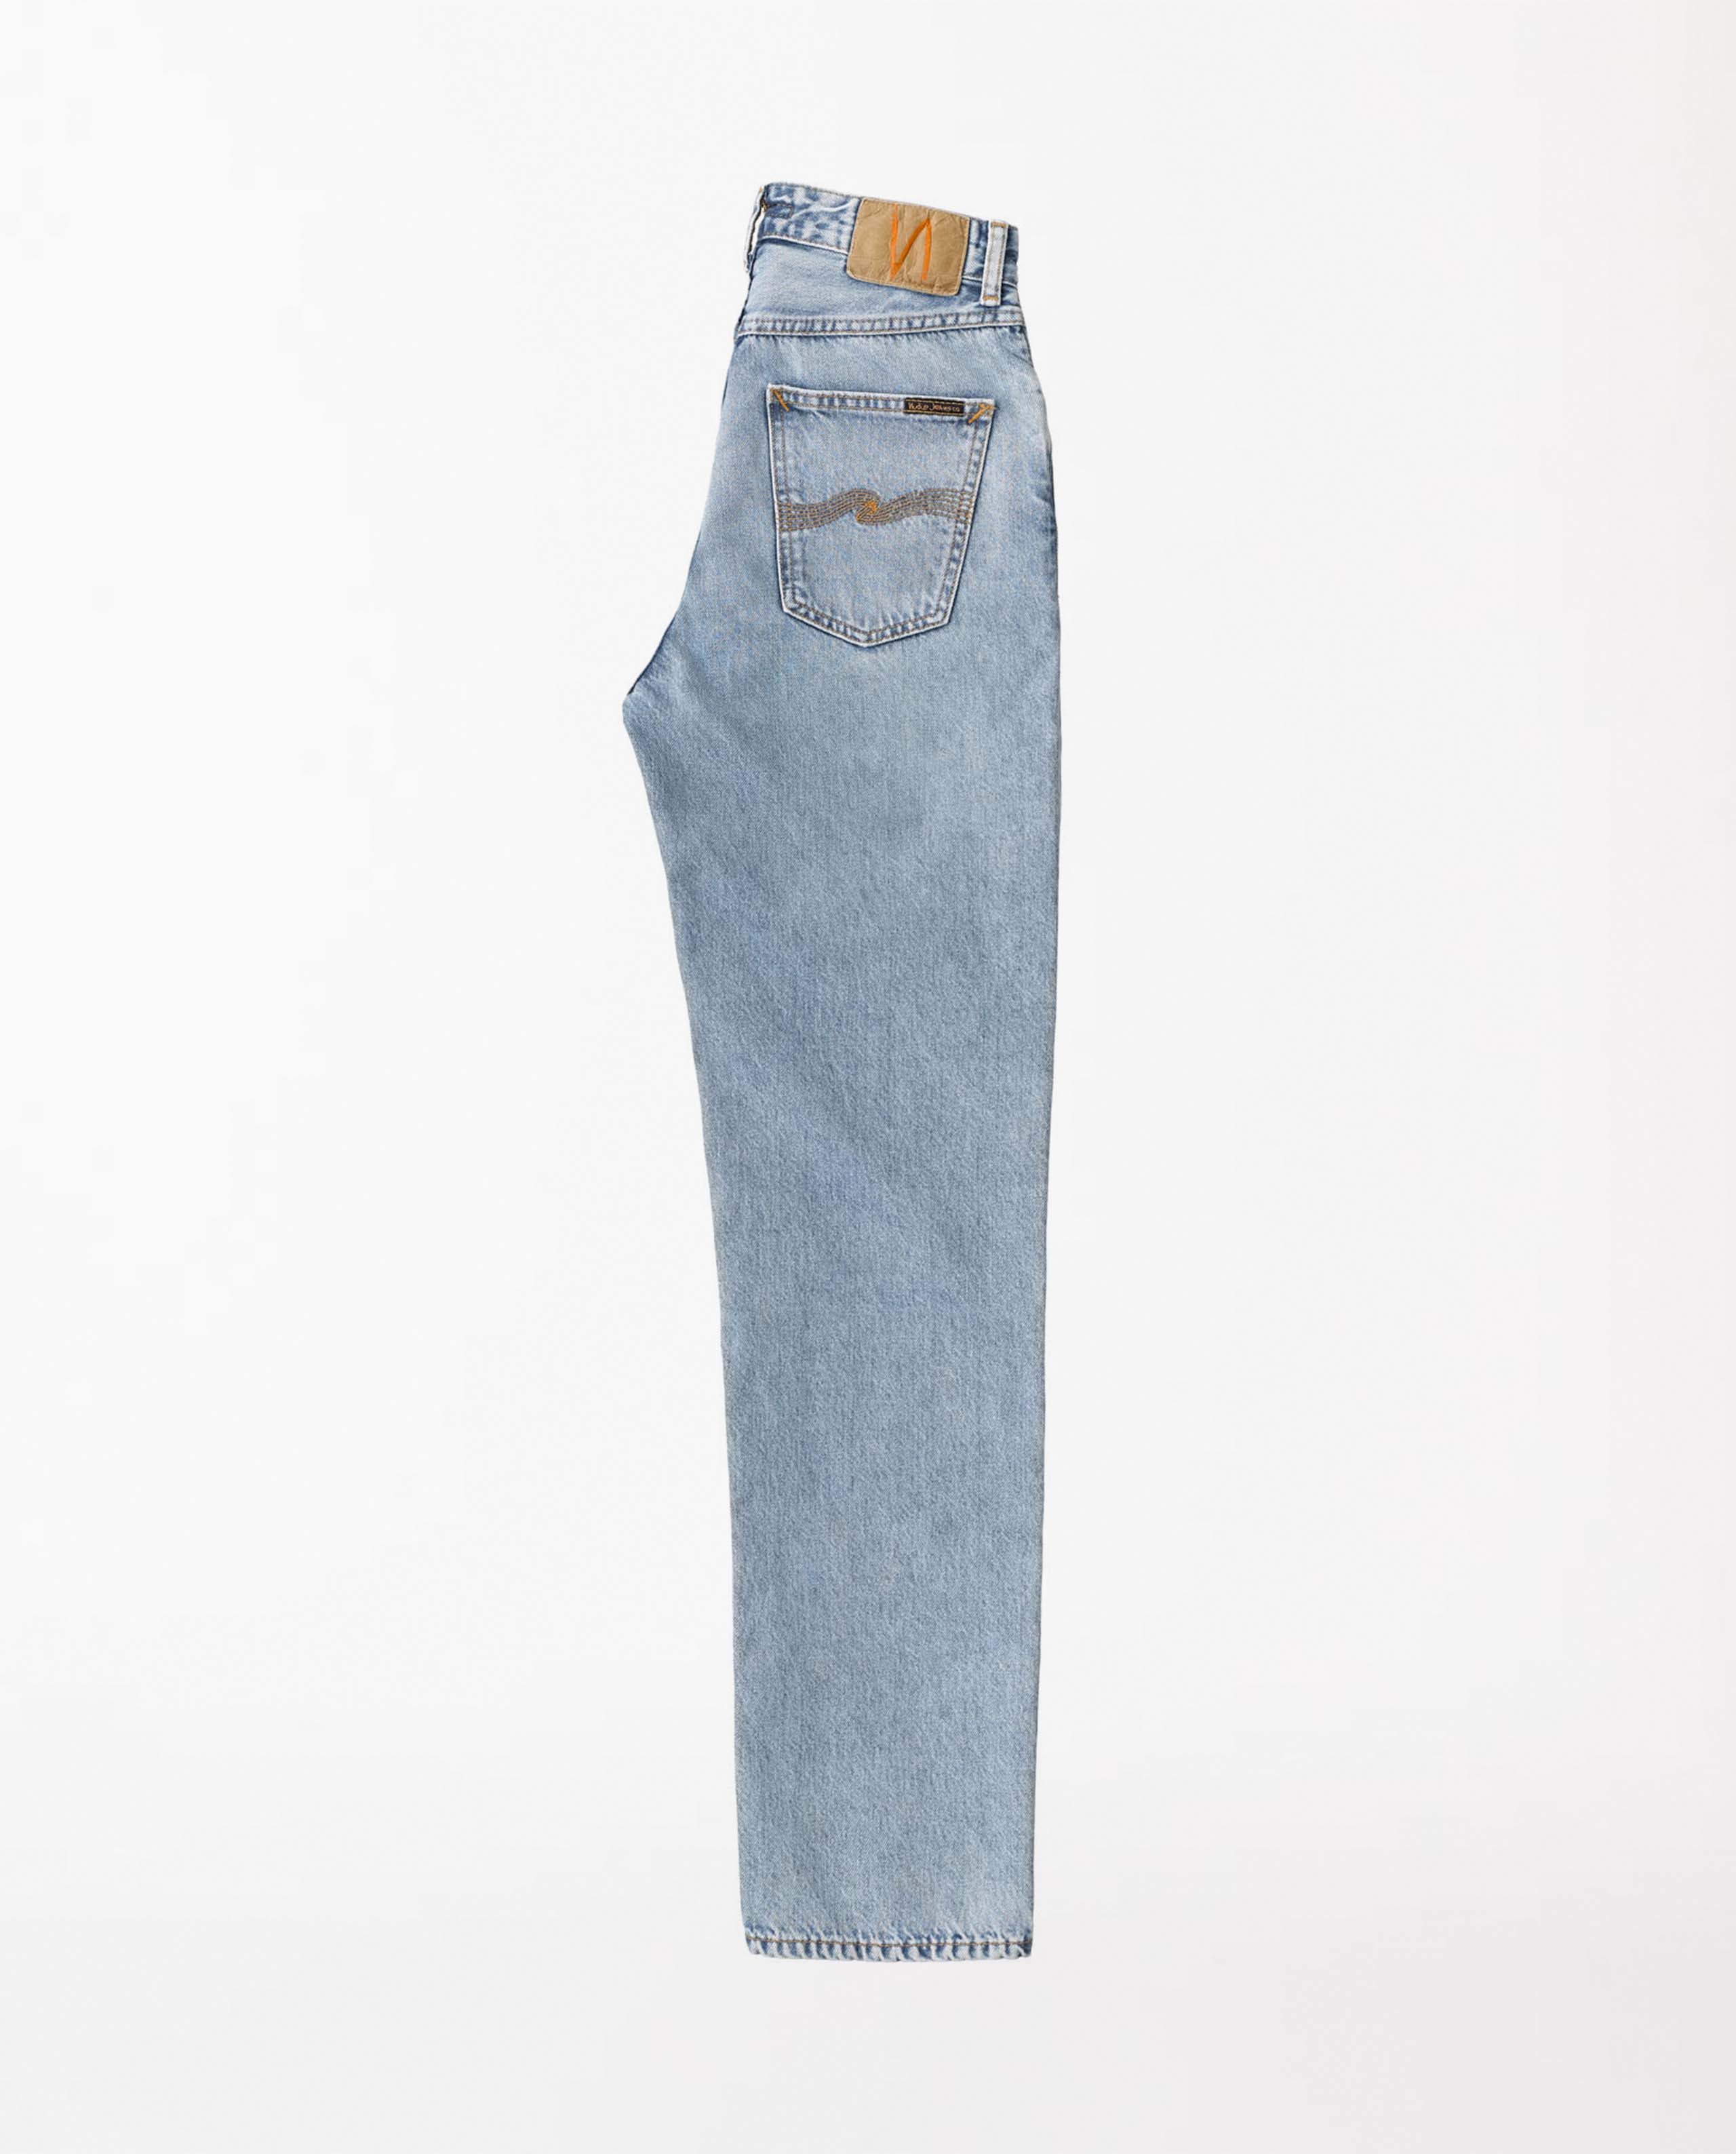 marché commun nudie jeans femme jean coton biologique lofty lo light vintage bleu clair